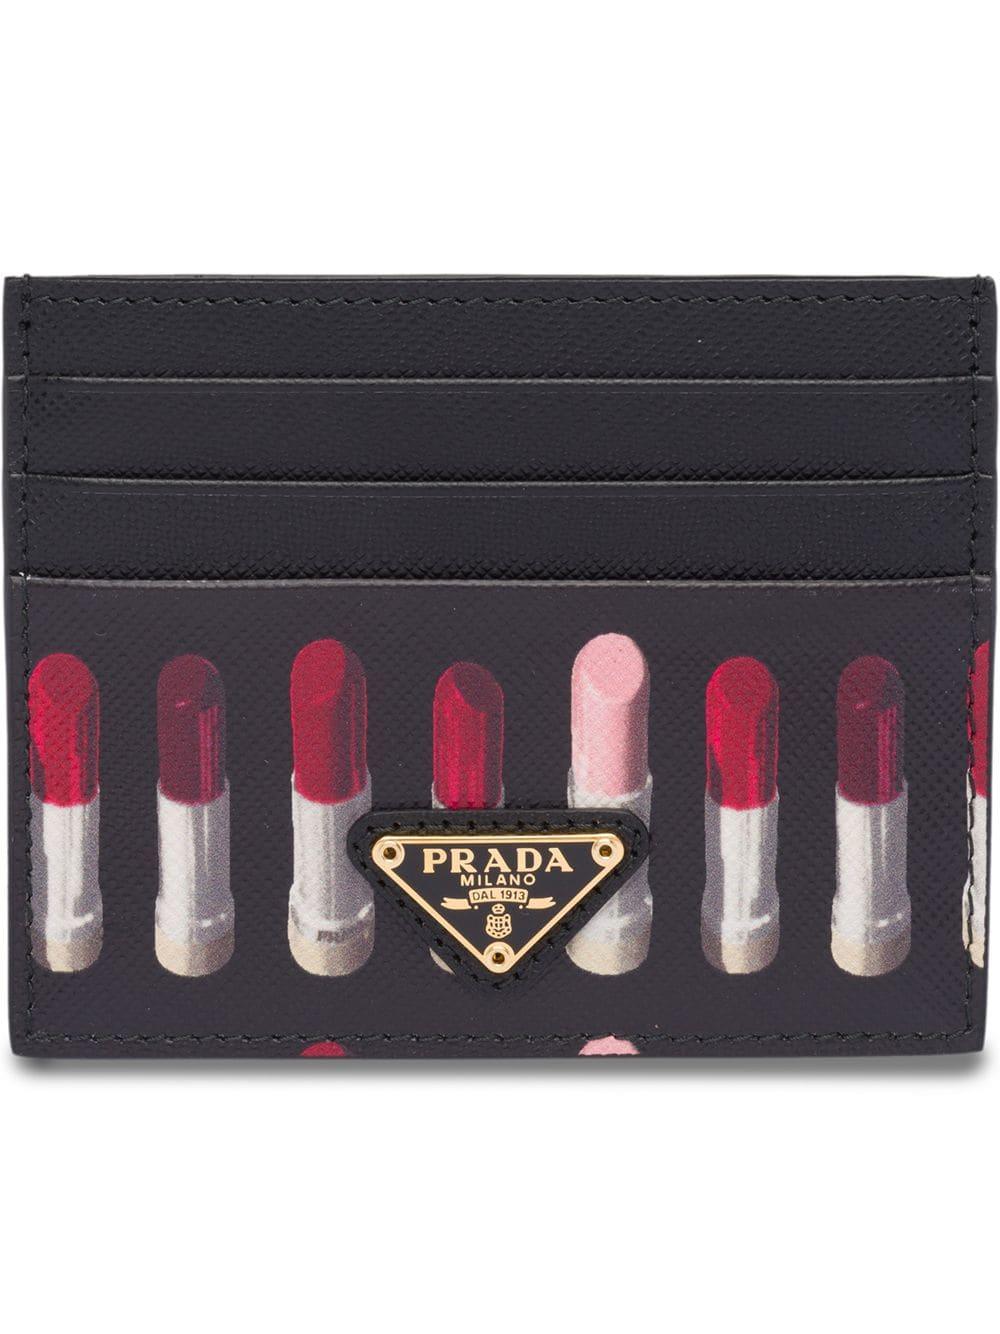 prada lipstick card holder